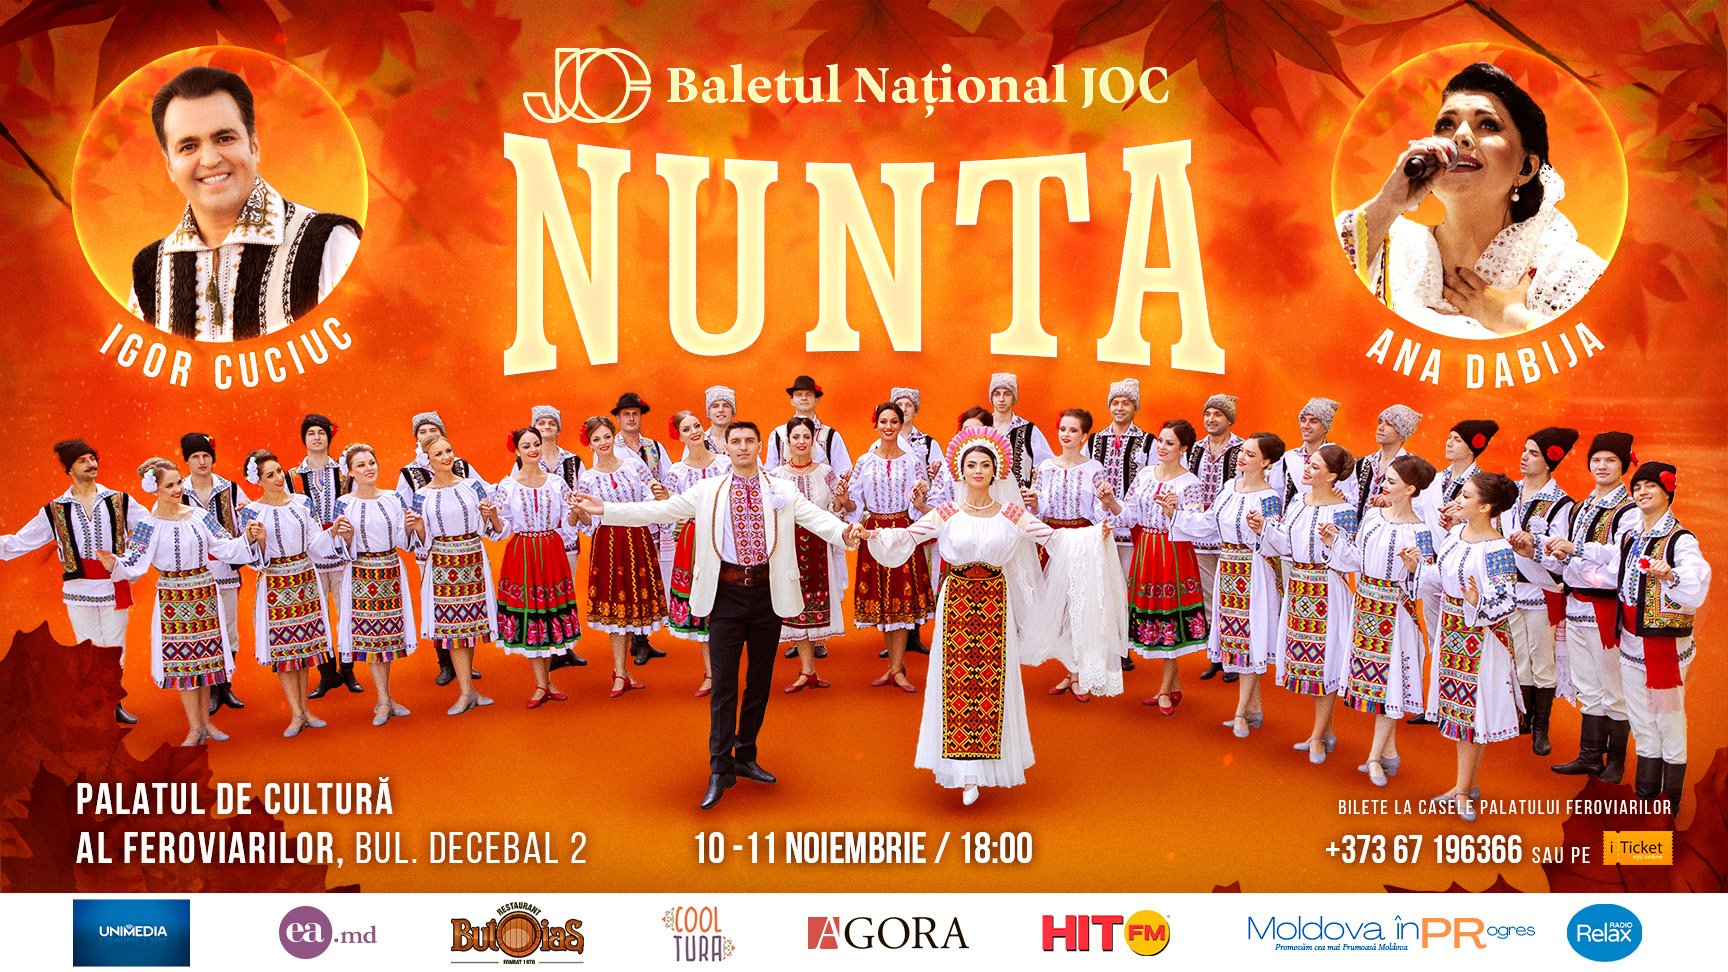 Baletul Național JOC - Nunta